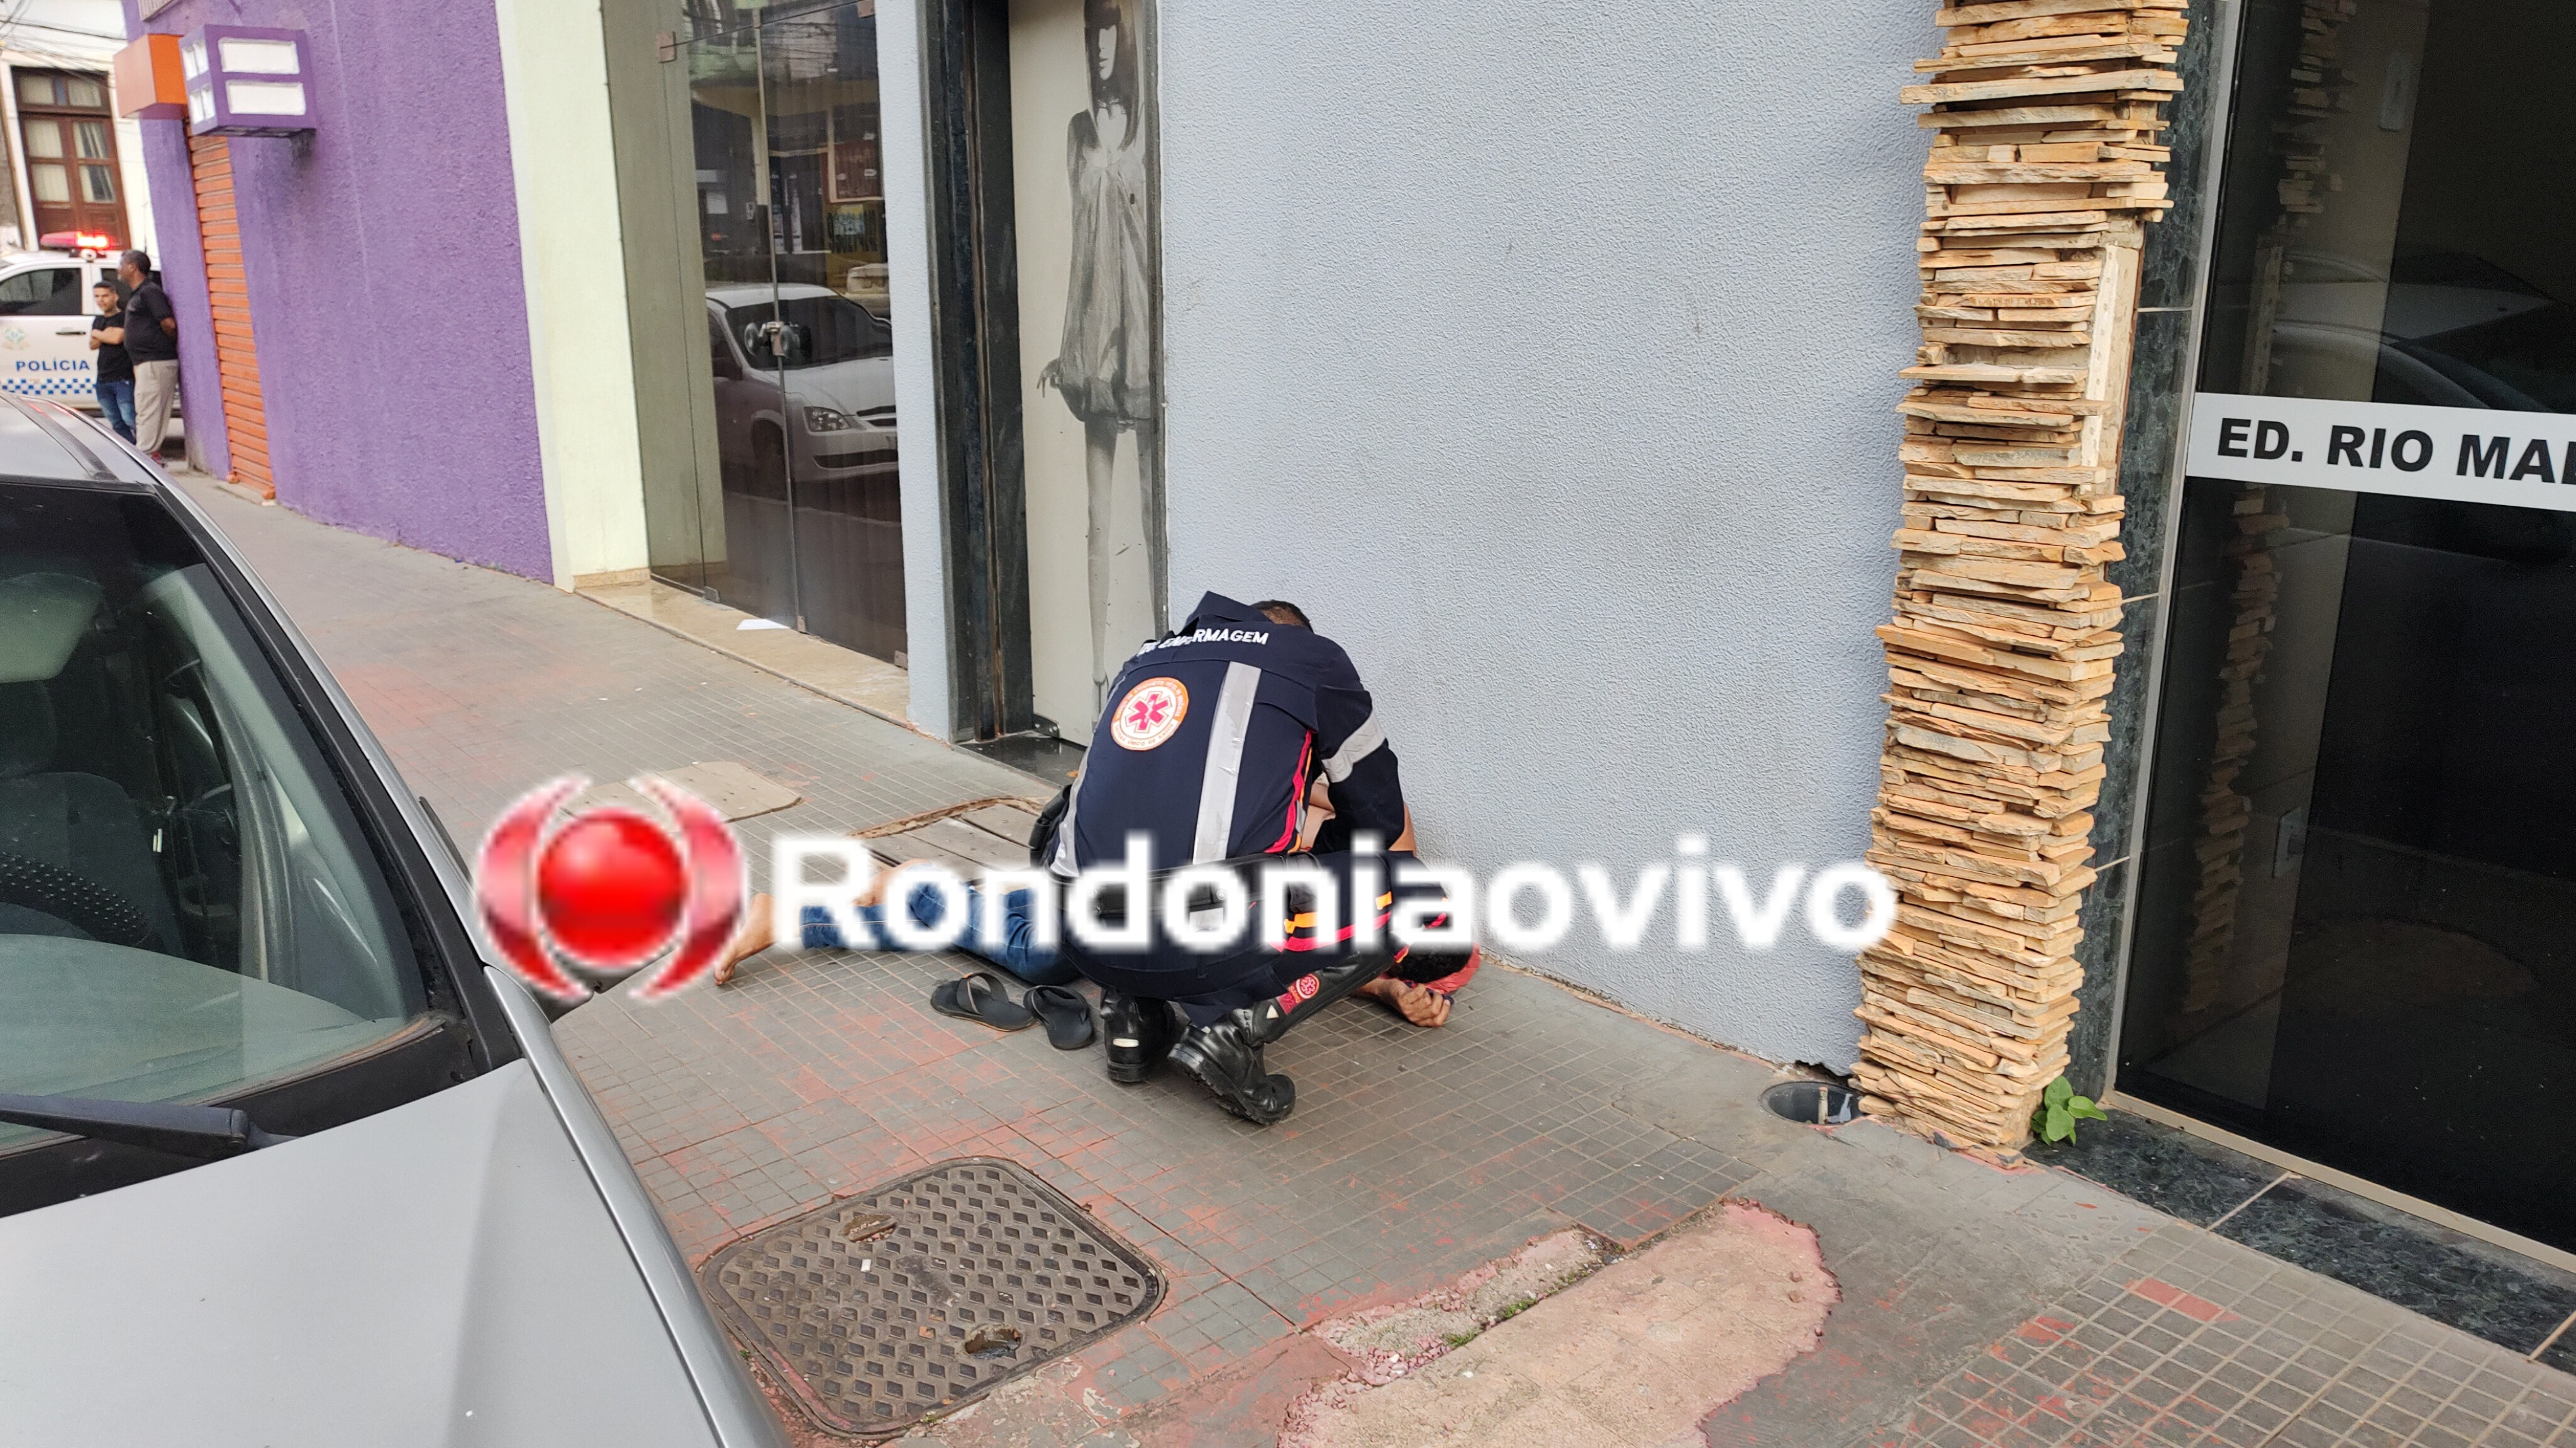 IDENTIFICADO: Homem é atacado na região Central de Porto Velho